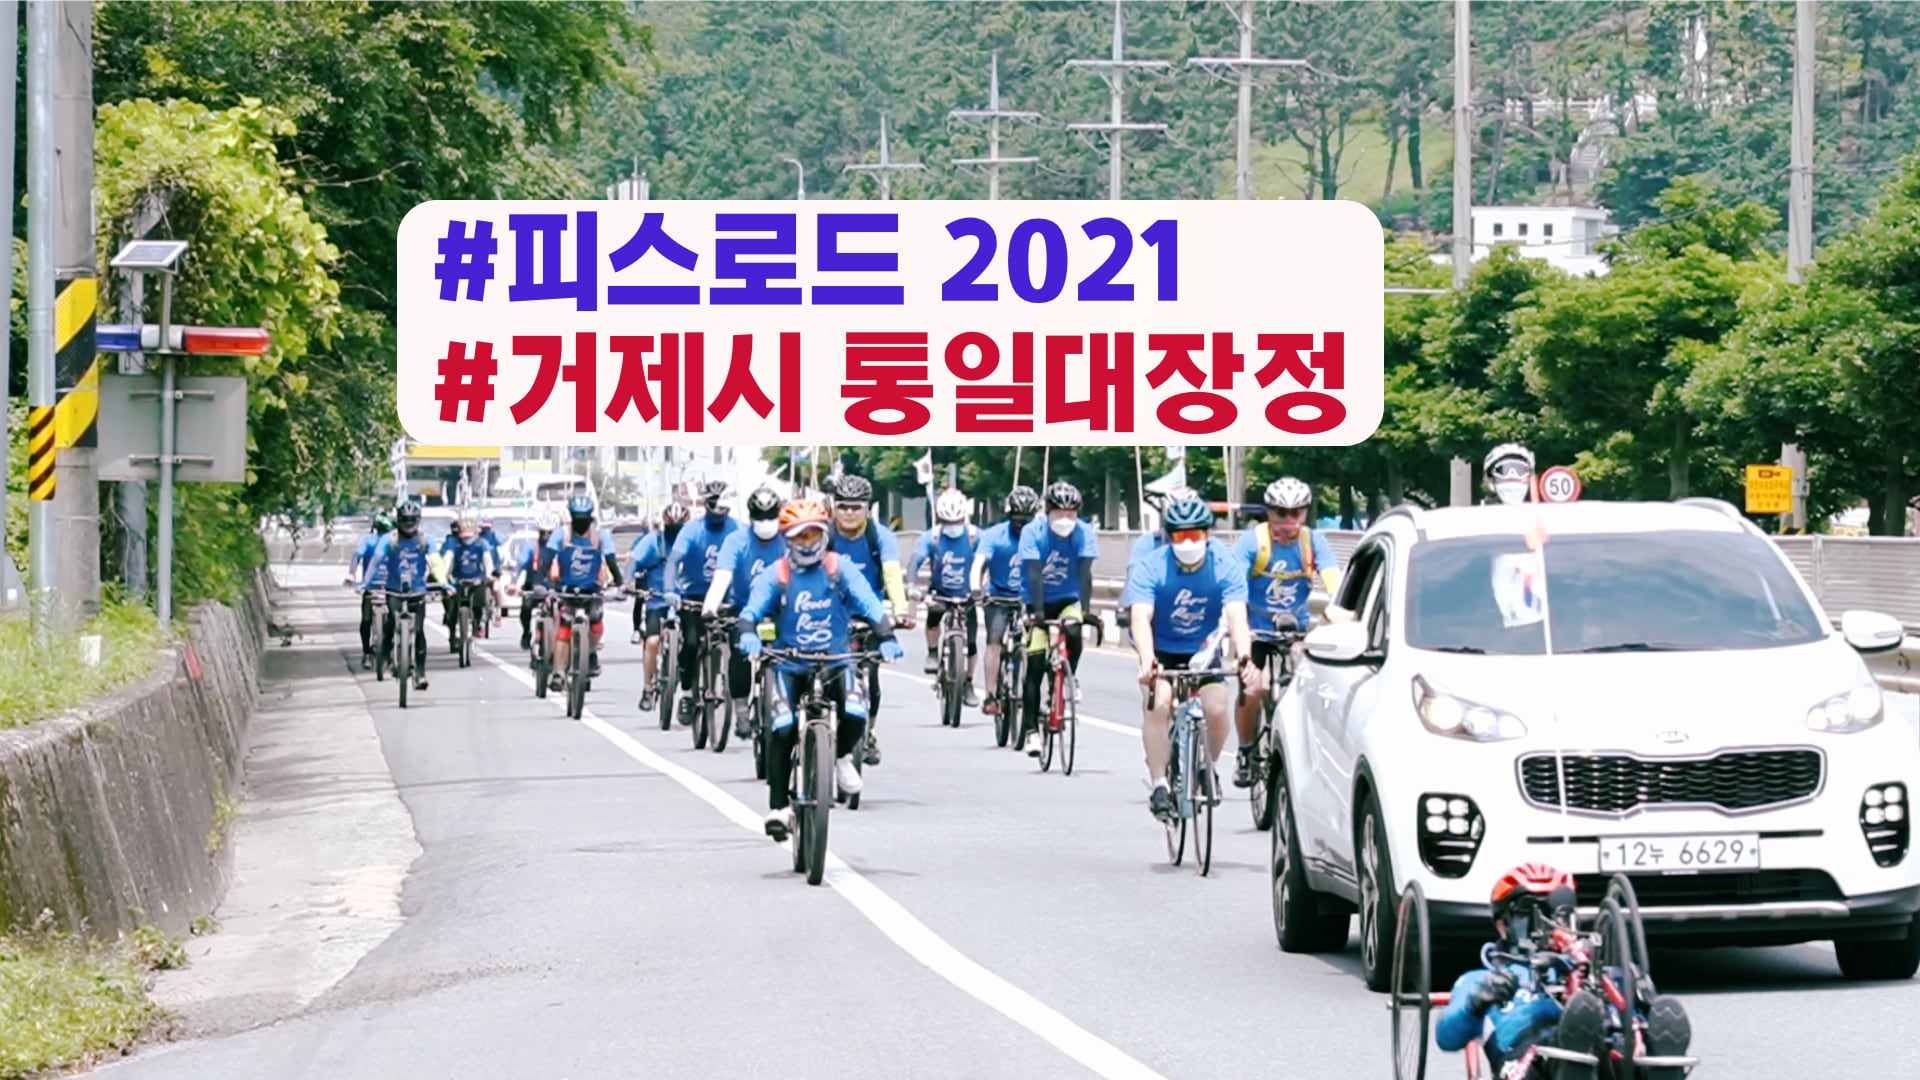 피스로드 2021 거제시 통일대장정ㅣ거제에서 평양까지 통일의 길을 열자!ㅣ